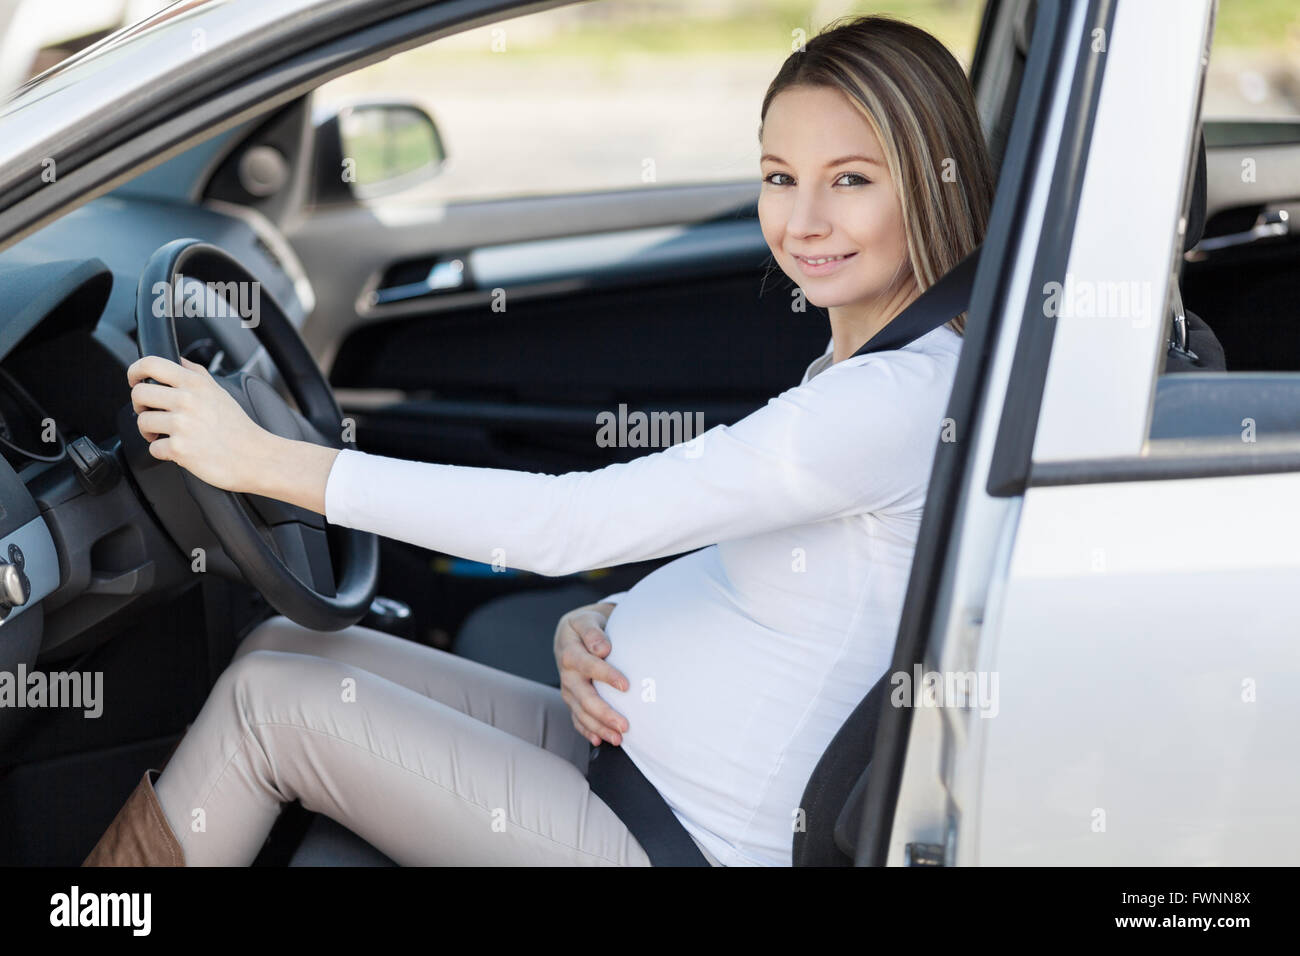 Schwangere Frau ihr Auto Sicherheitsgurt tragen Stockfotografie